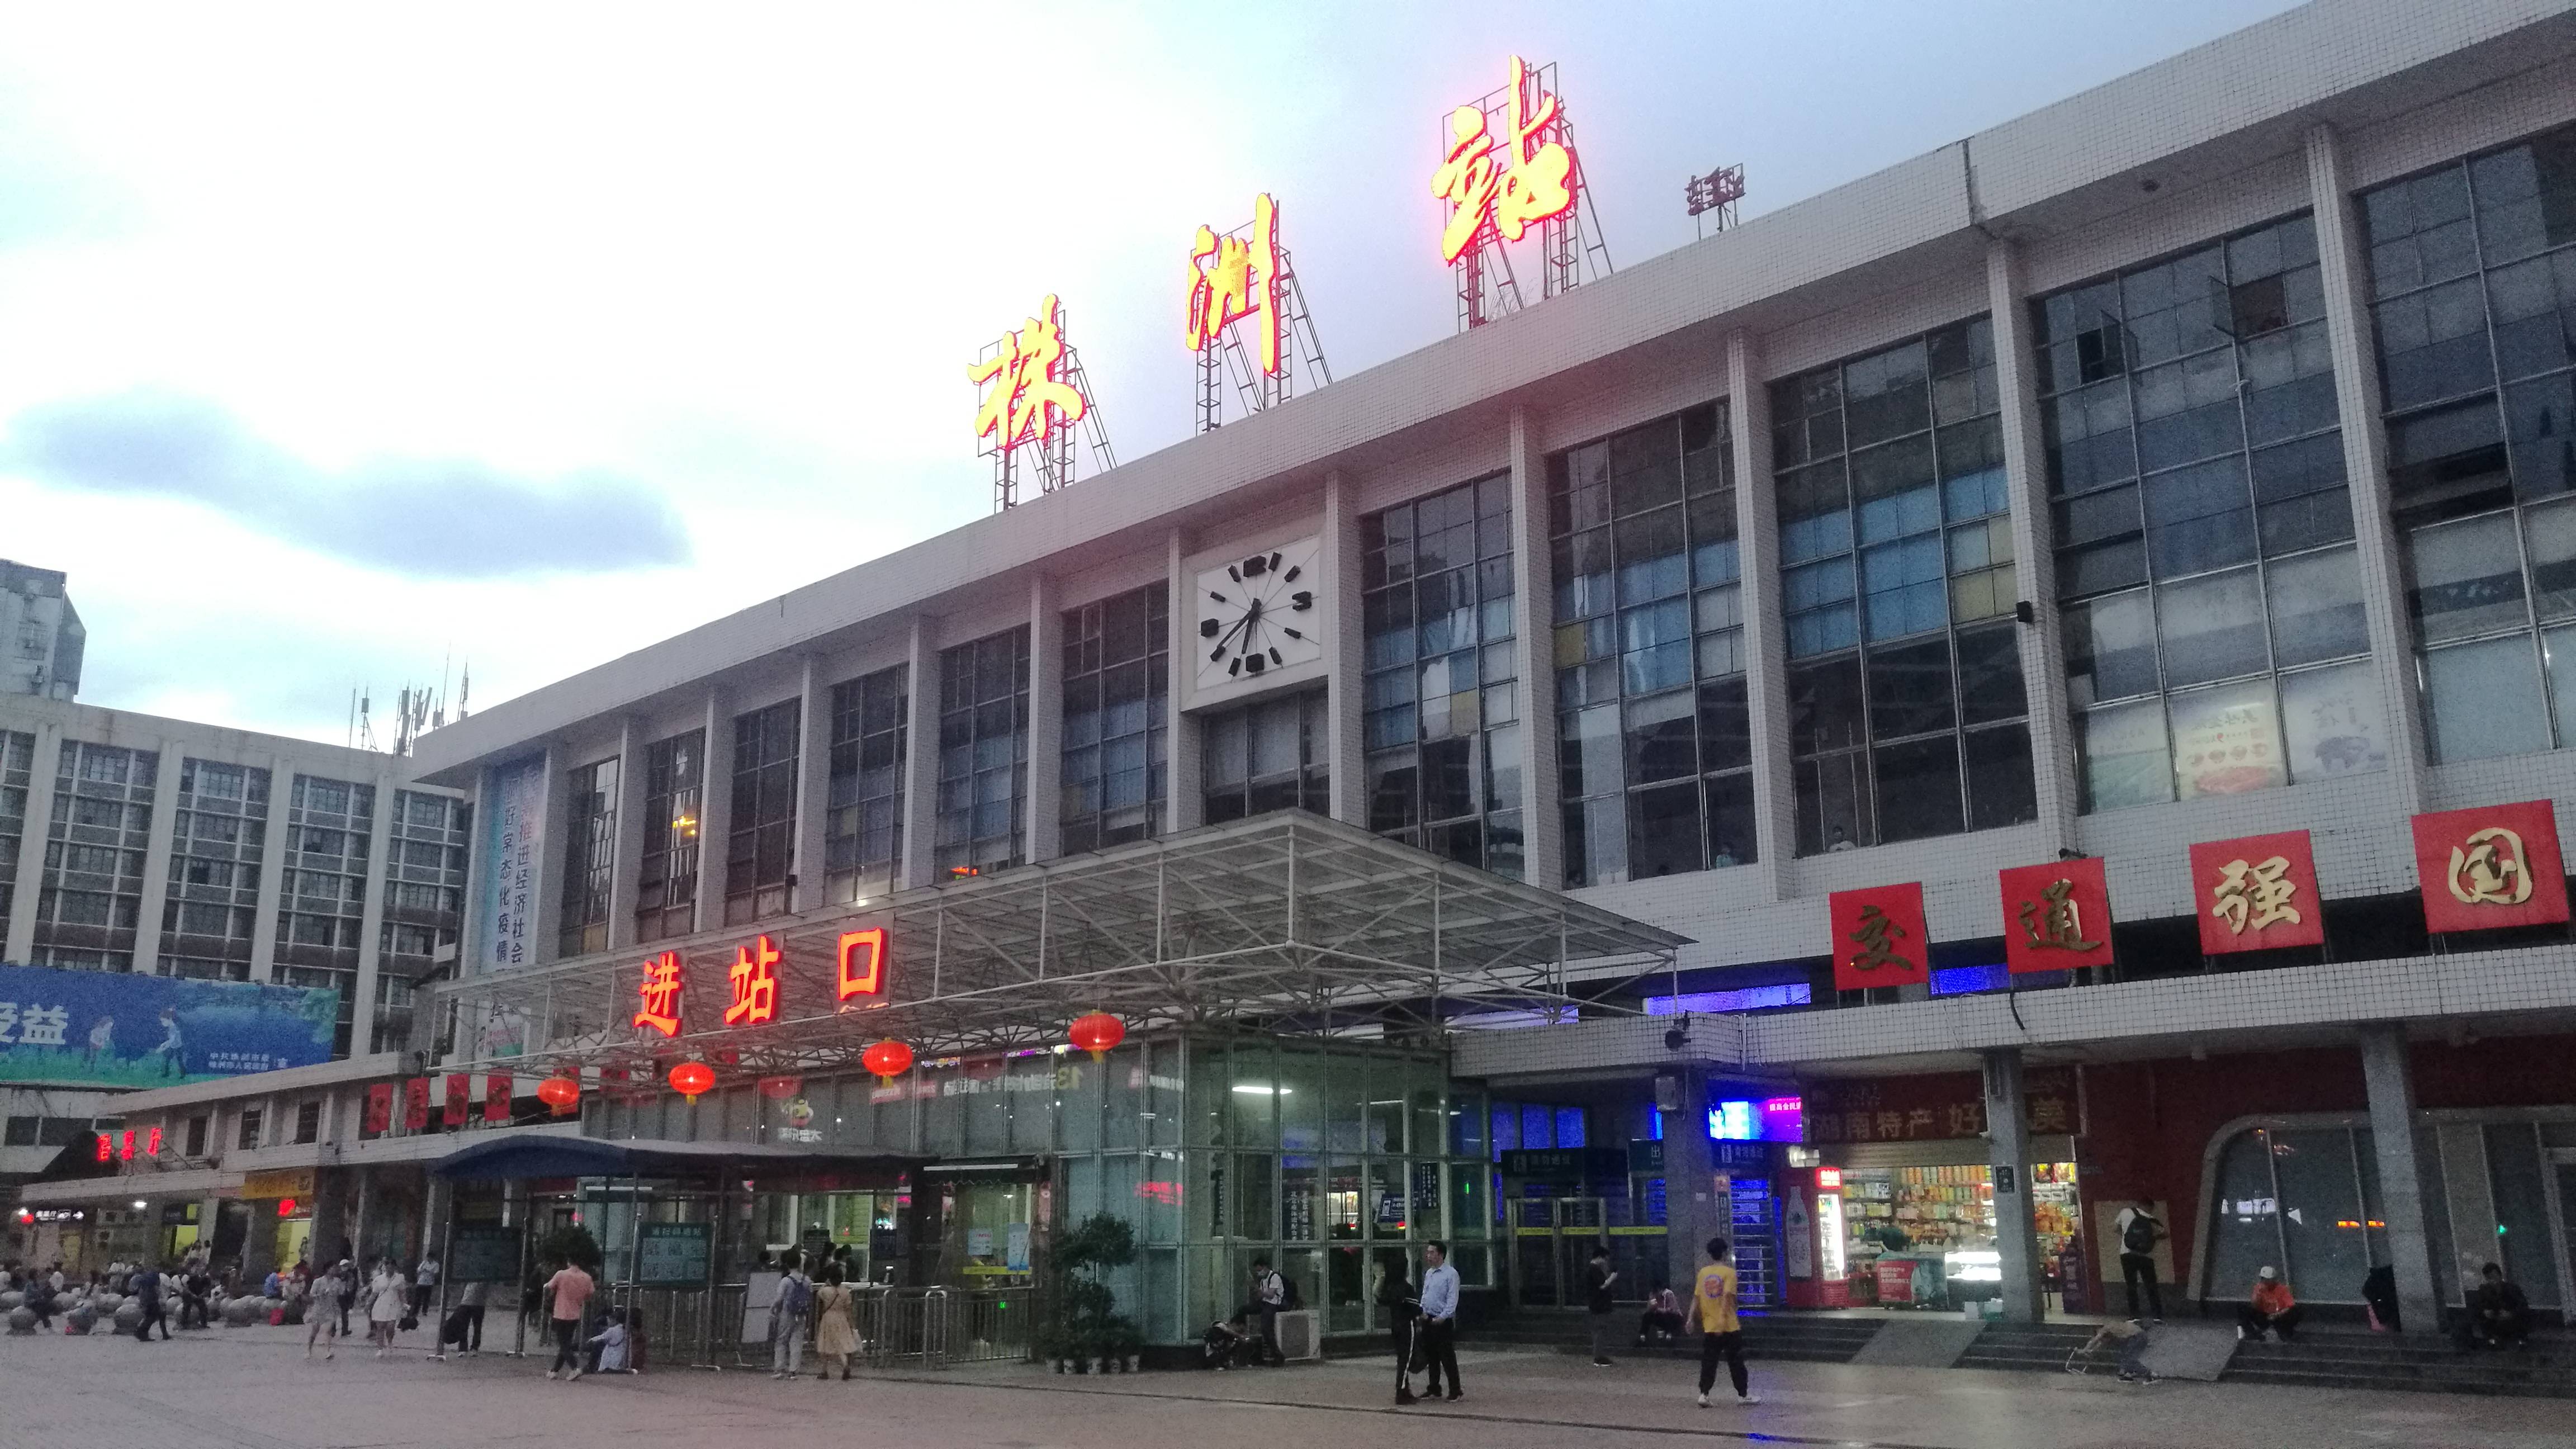 株洲火车站图片晚上图片